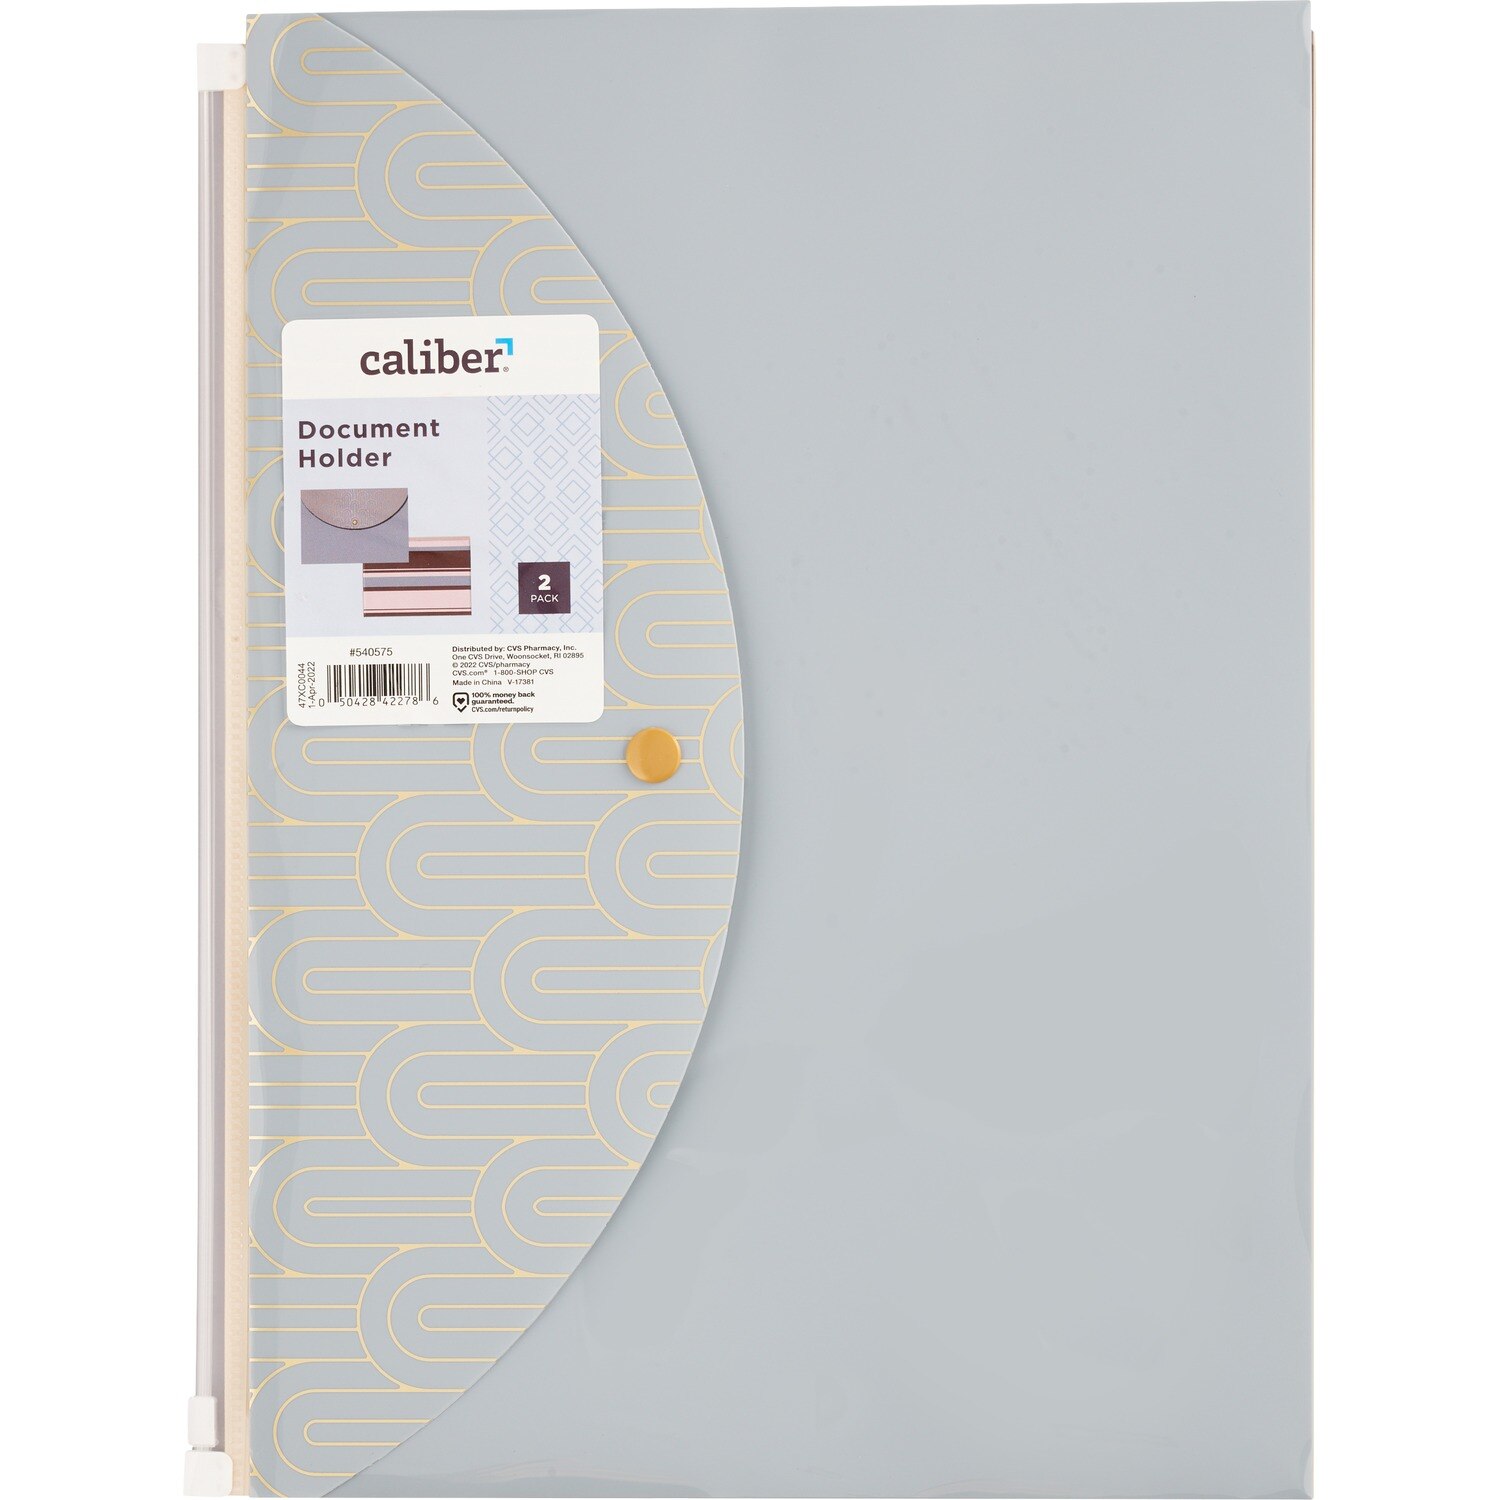 Caliber Document Holder, 2 Pack